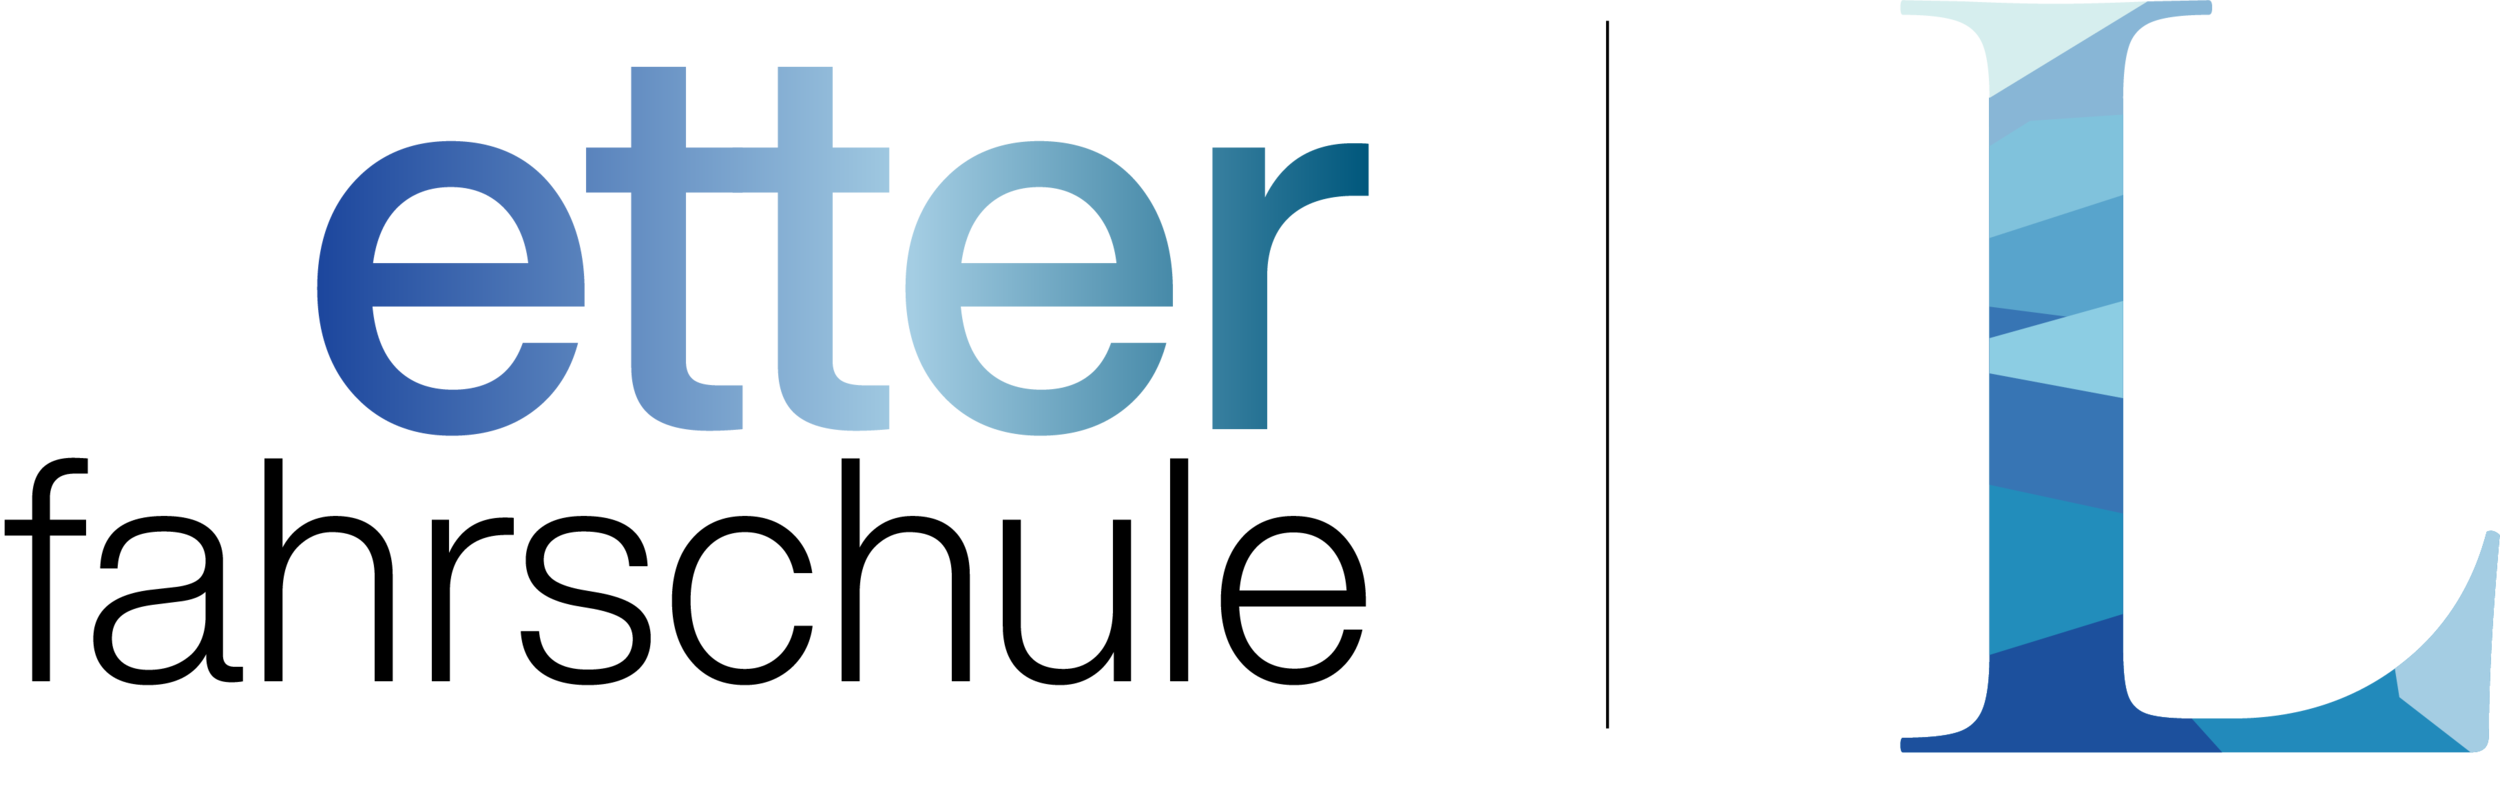 Logo_Etter.png